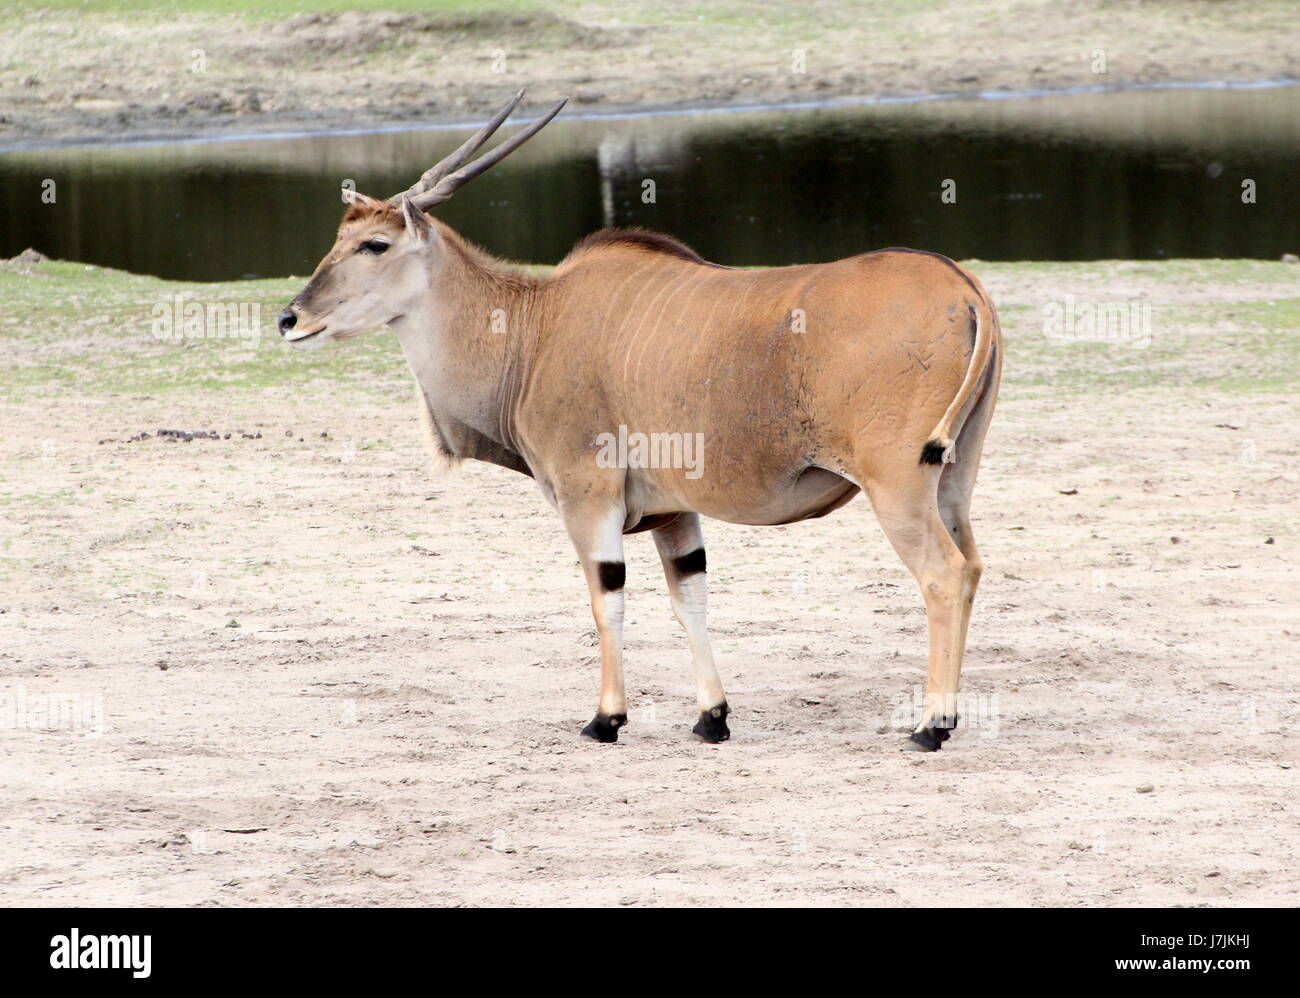 Reifen Sie männlichen afrikanischen Süden oder gemeinsame Eland-Antilopen (Tauro Oryx). Stockfoto